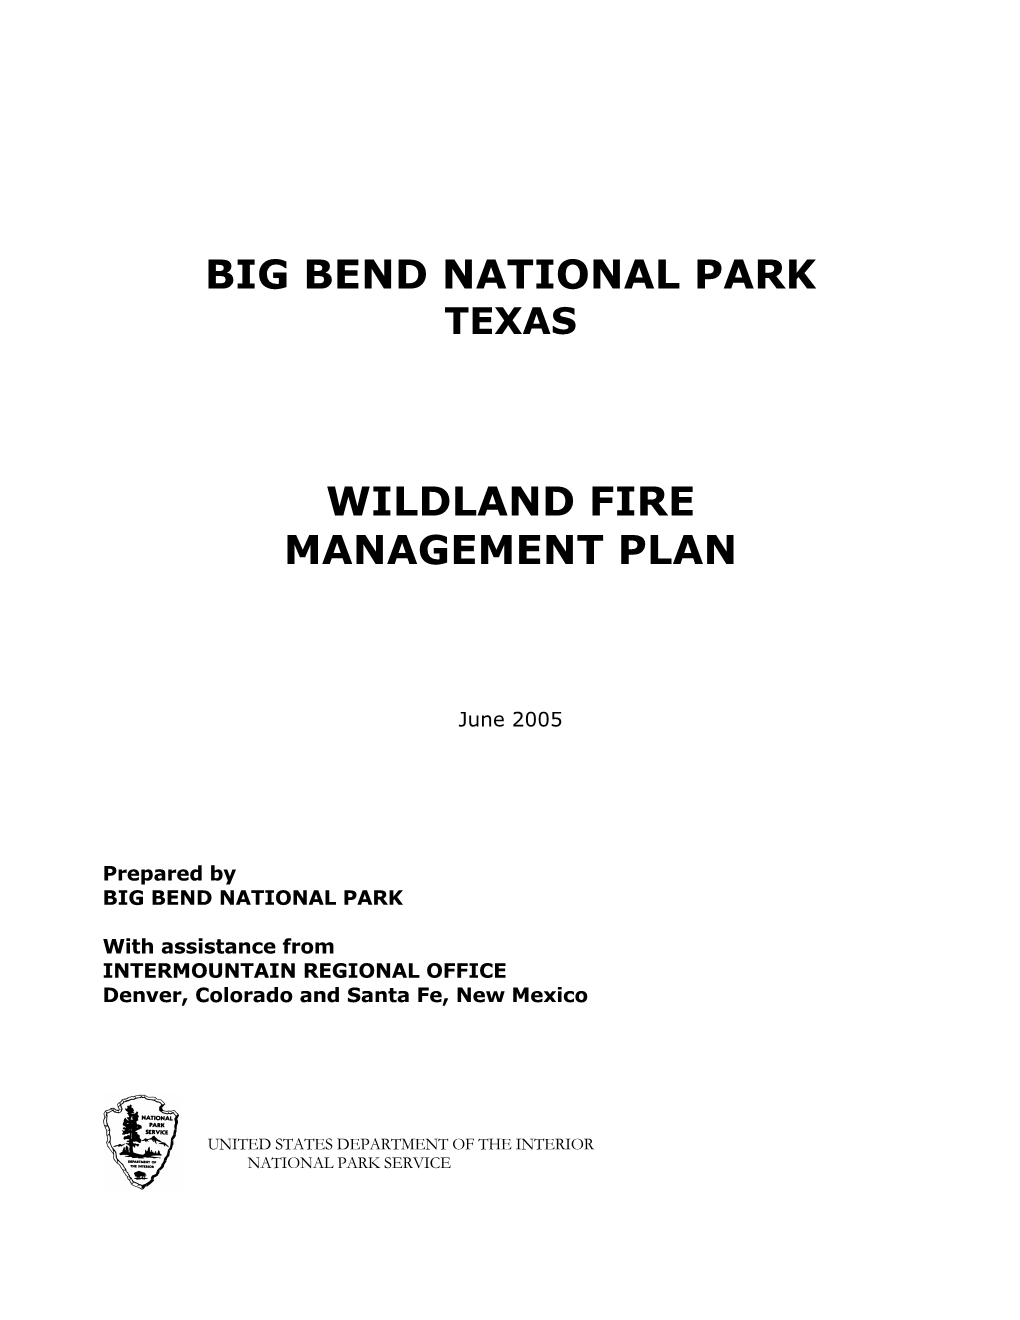 Big Bend National Park Wildland Fire Management